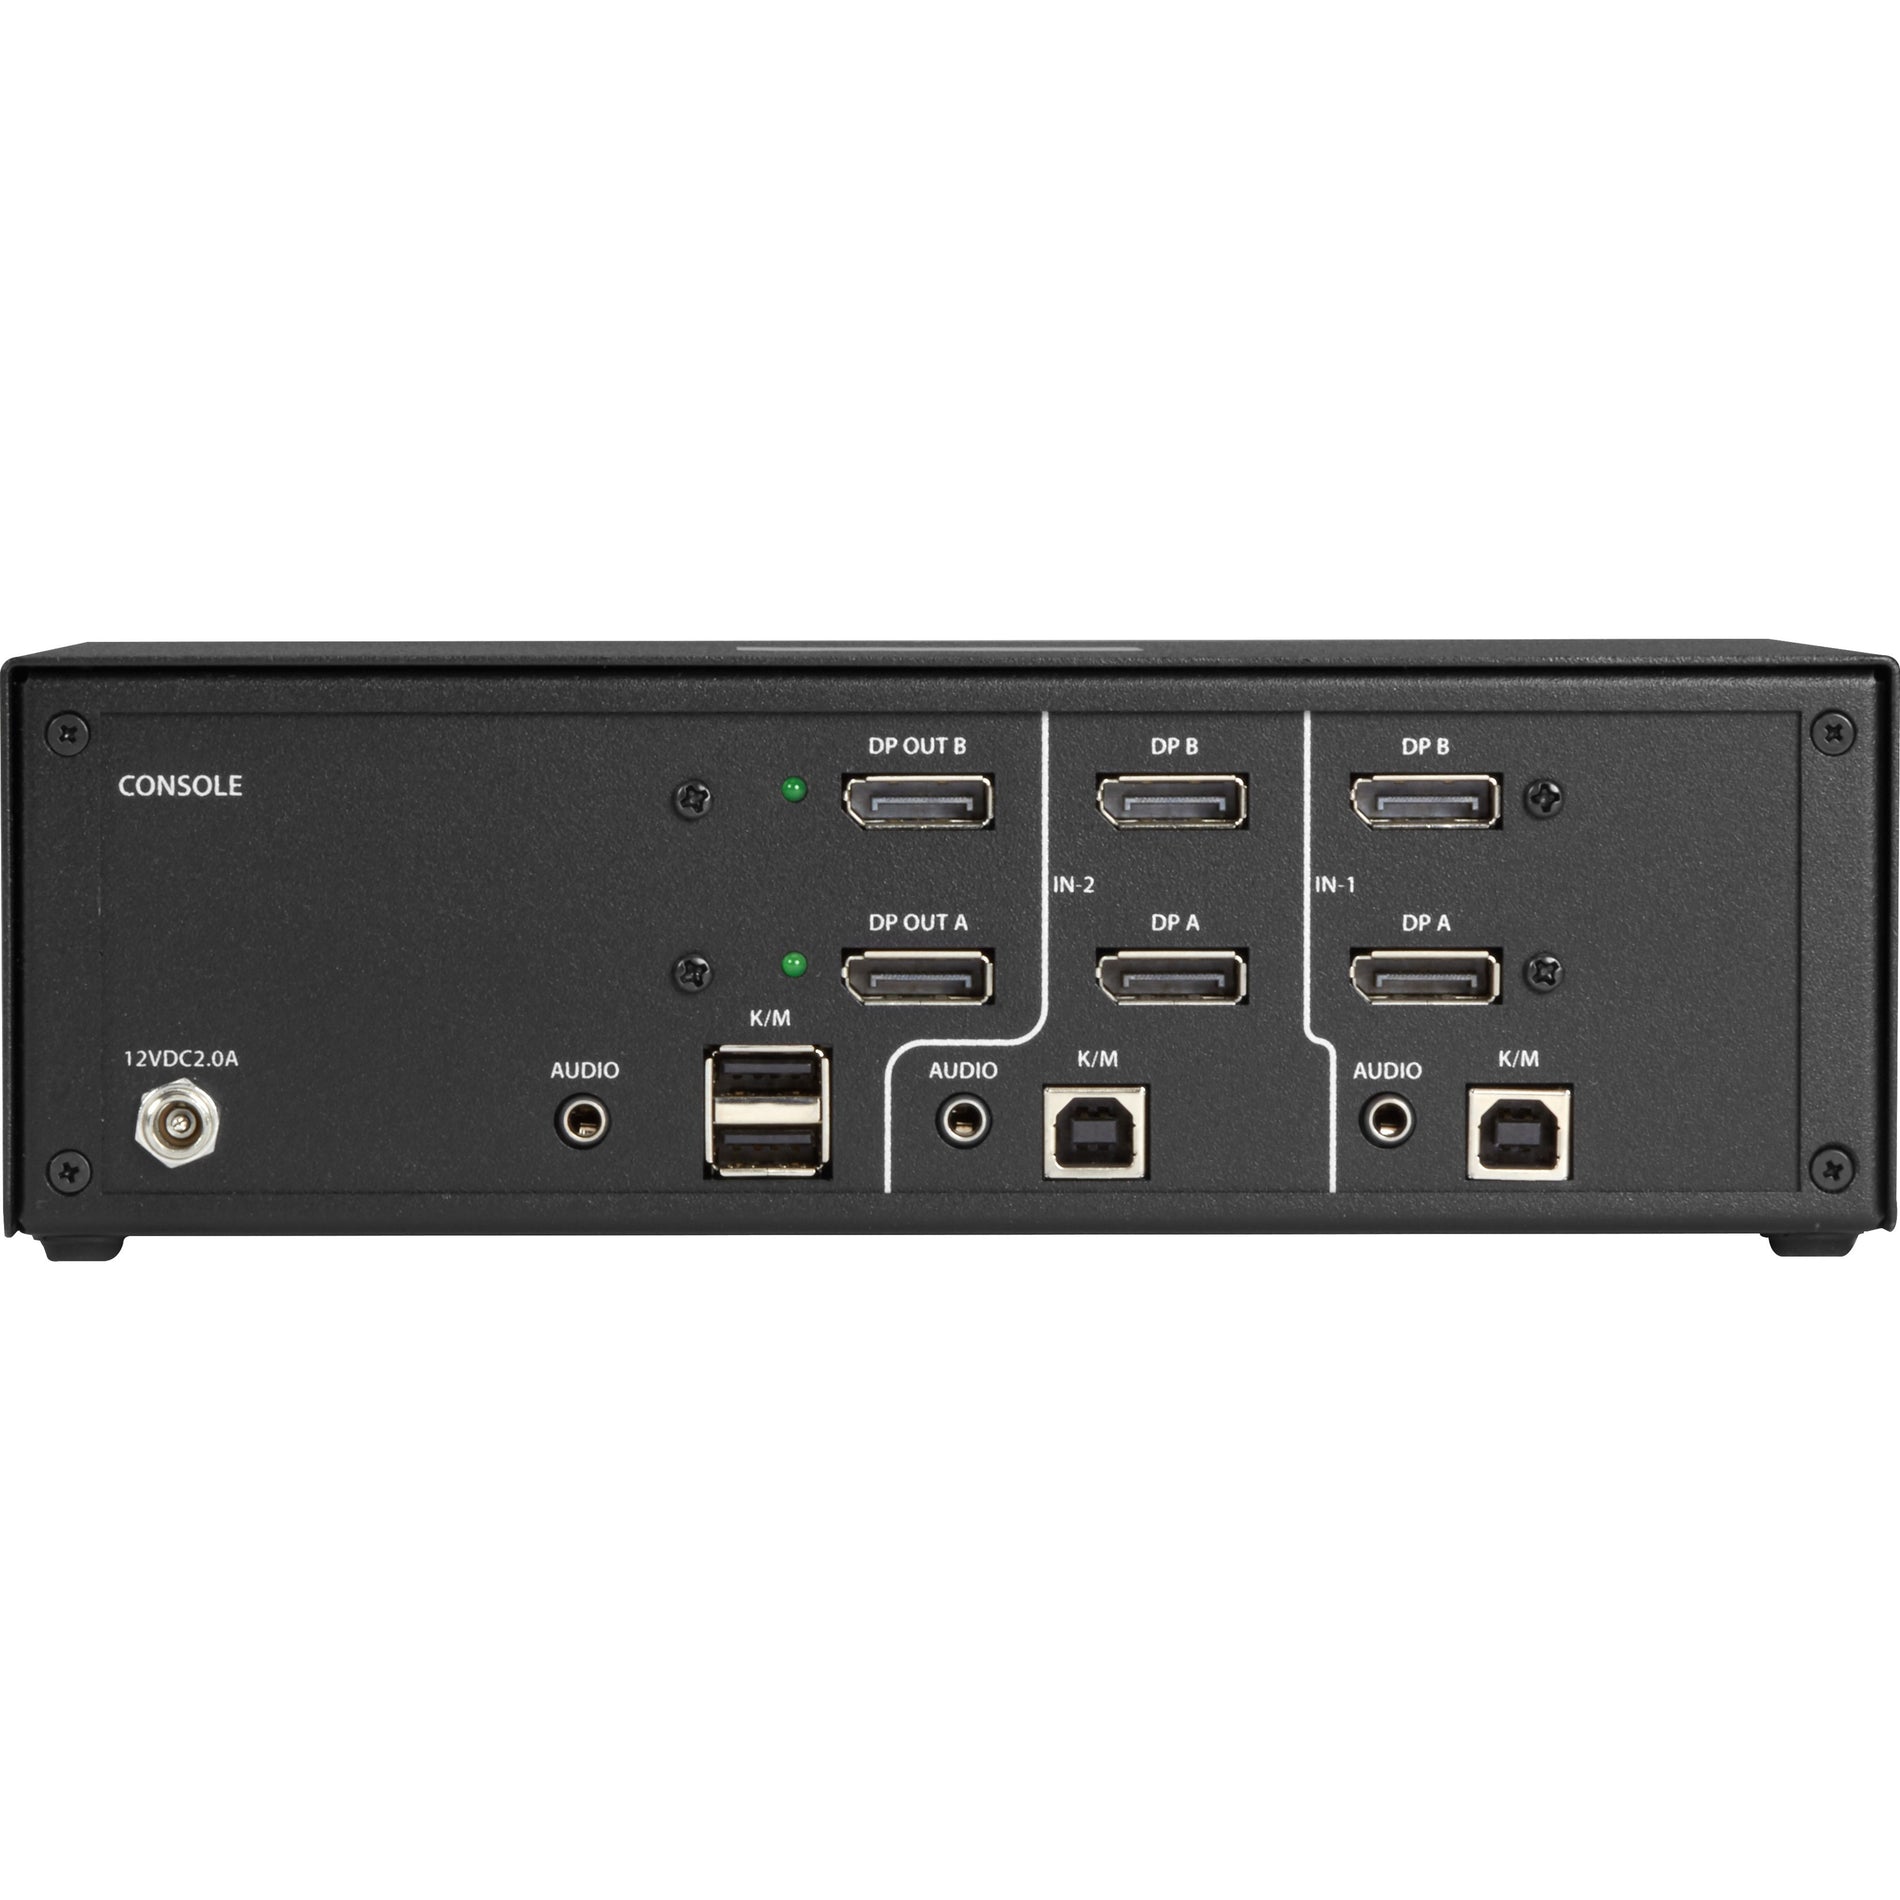 علبة سوداء SS2P-DH-DP-U من شركة Black Box مفتاح تحكم و بتبديل KVM يعمل بمداخل العرض المزدوجة بمنفذ DisplayPort ويتمتع بالحماية NIAP 3.0، دقة 4K ومتوافق مع قانون التعاون التجاري الأمريكي TAA